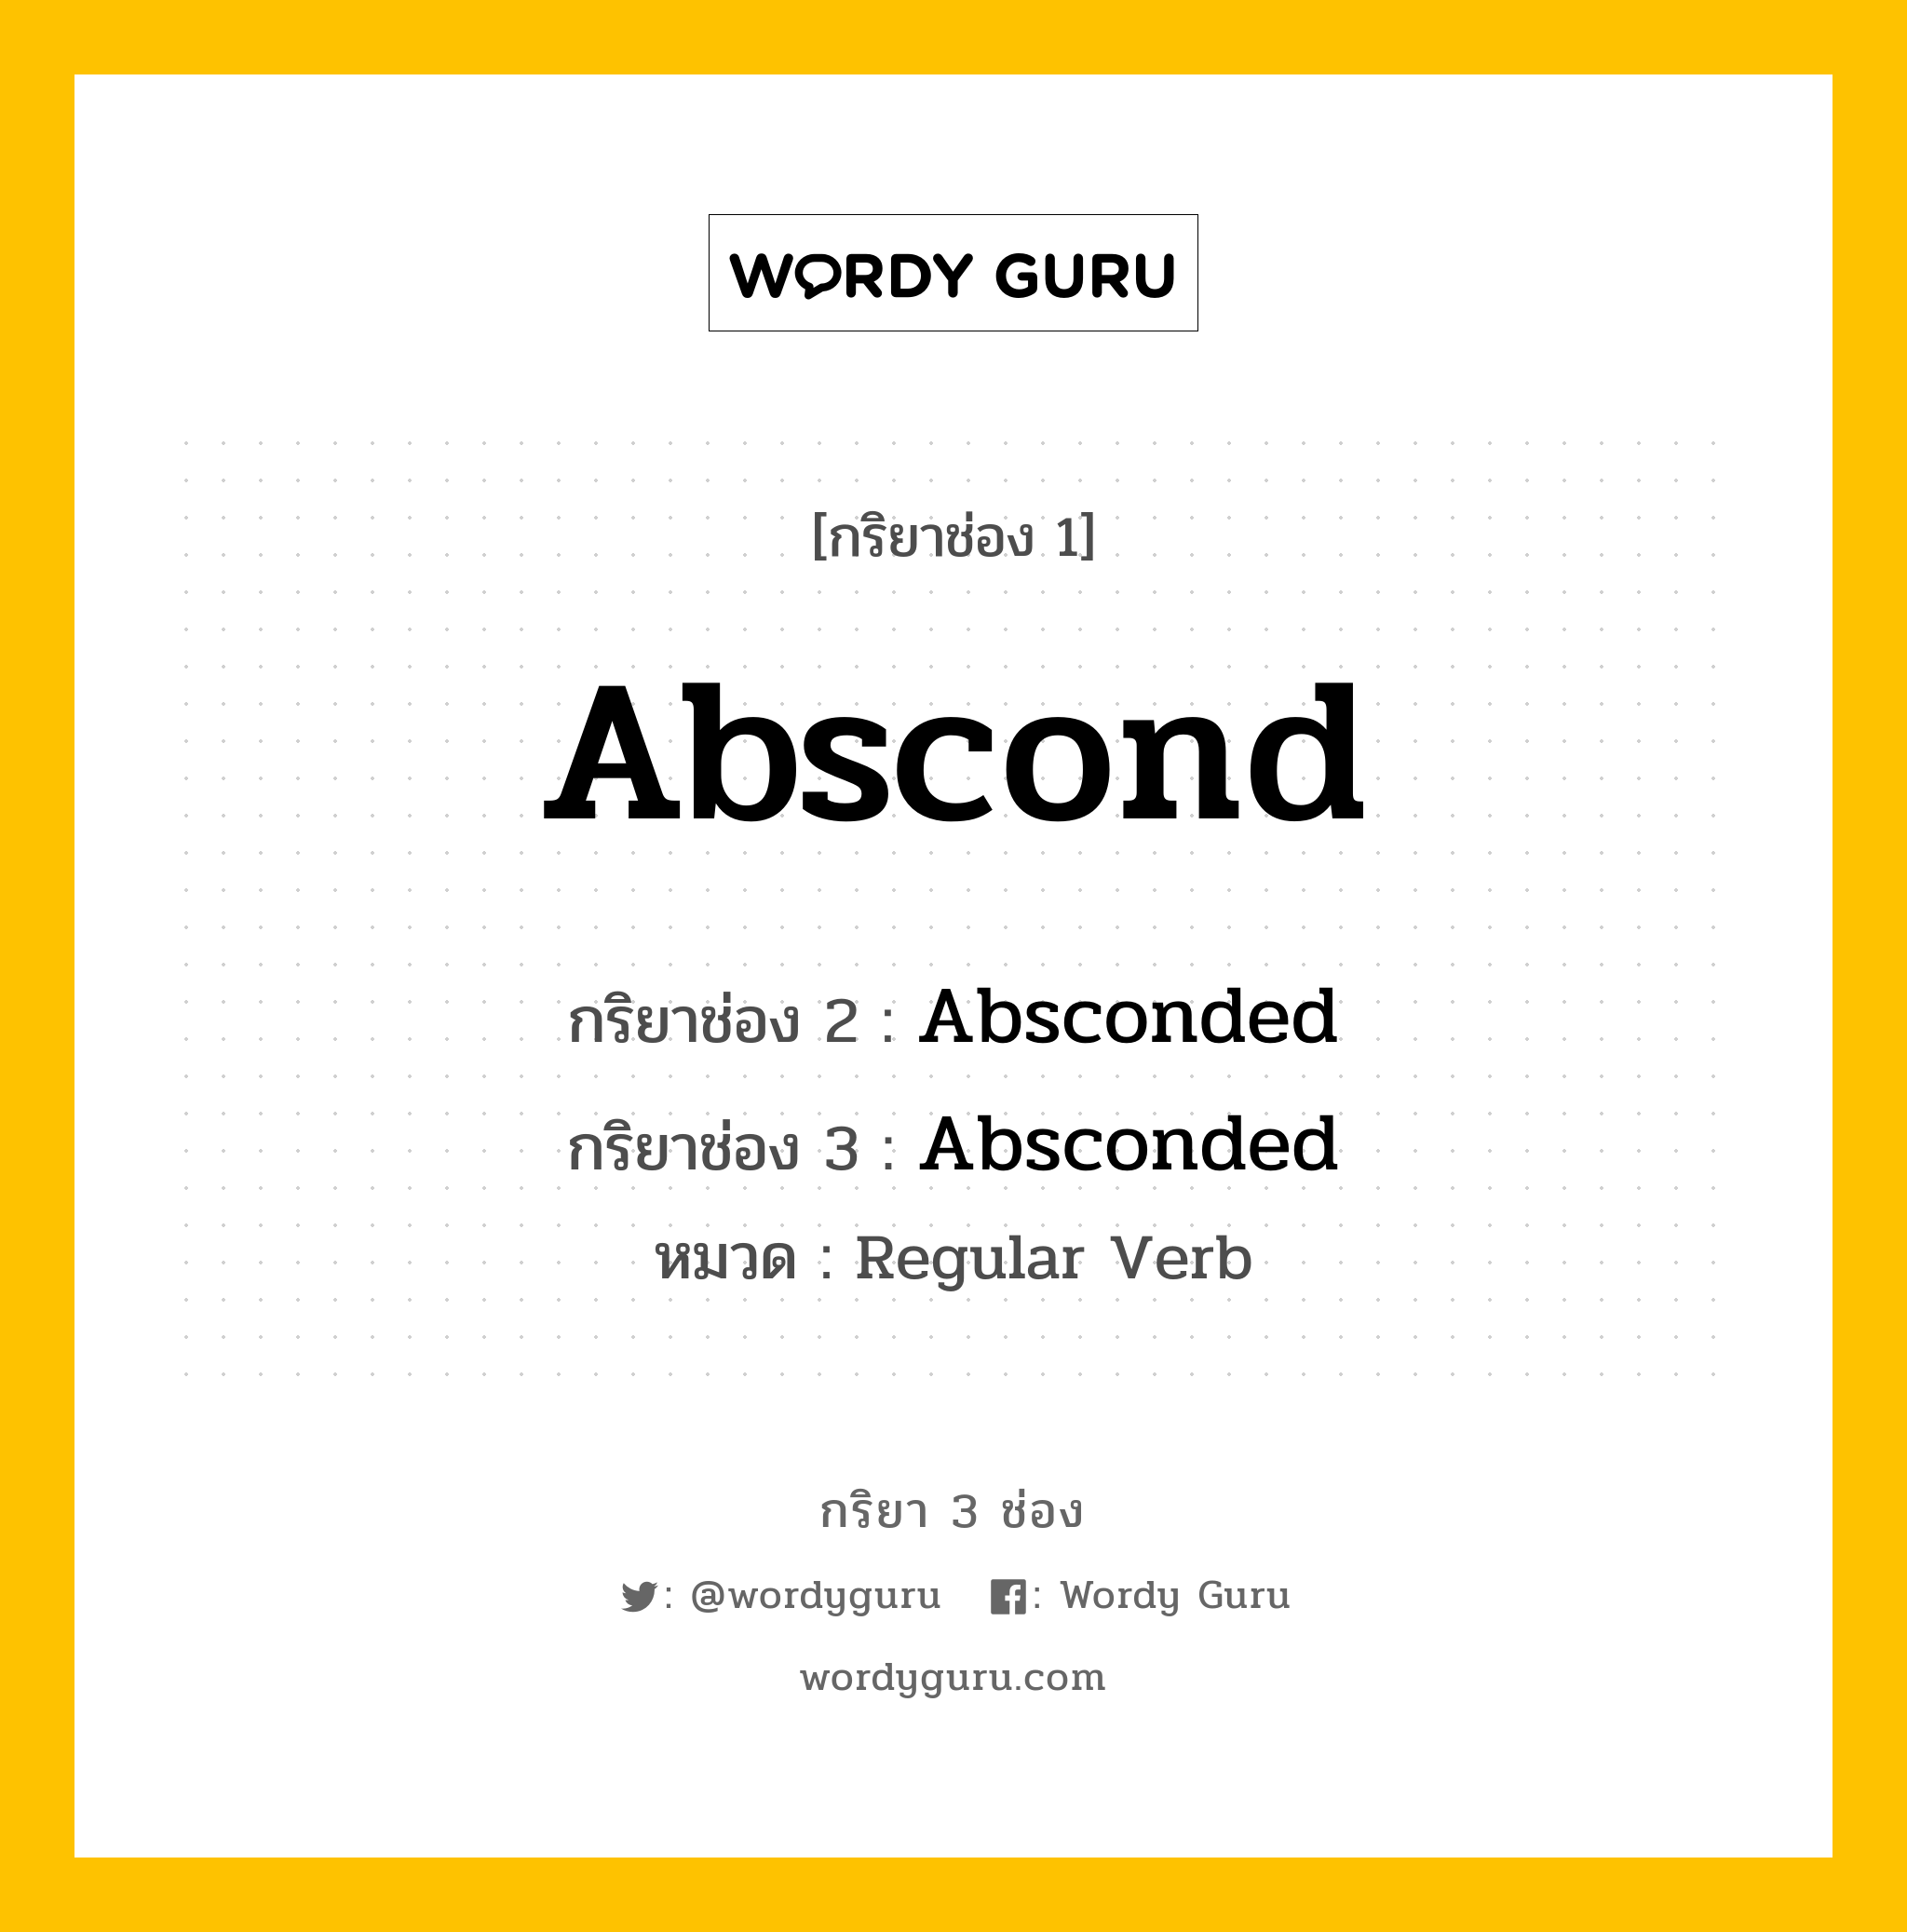 Abscond มีกริยา 3 ช่องอะไรบ้าง? คำศัพท์ในกลุ่มประเภท Regular Verb, กริยาช่อง 1 Abscond กริยาช่อง 2 Absconded กริยาช่อง 3 Absconded หมวด Regular Verb หมวด Regular Verb